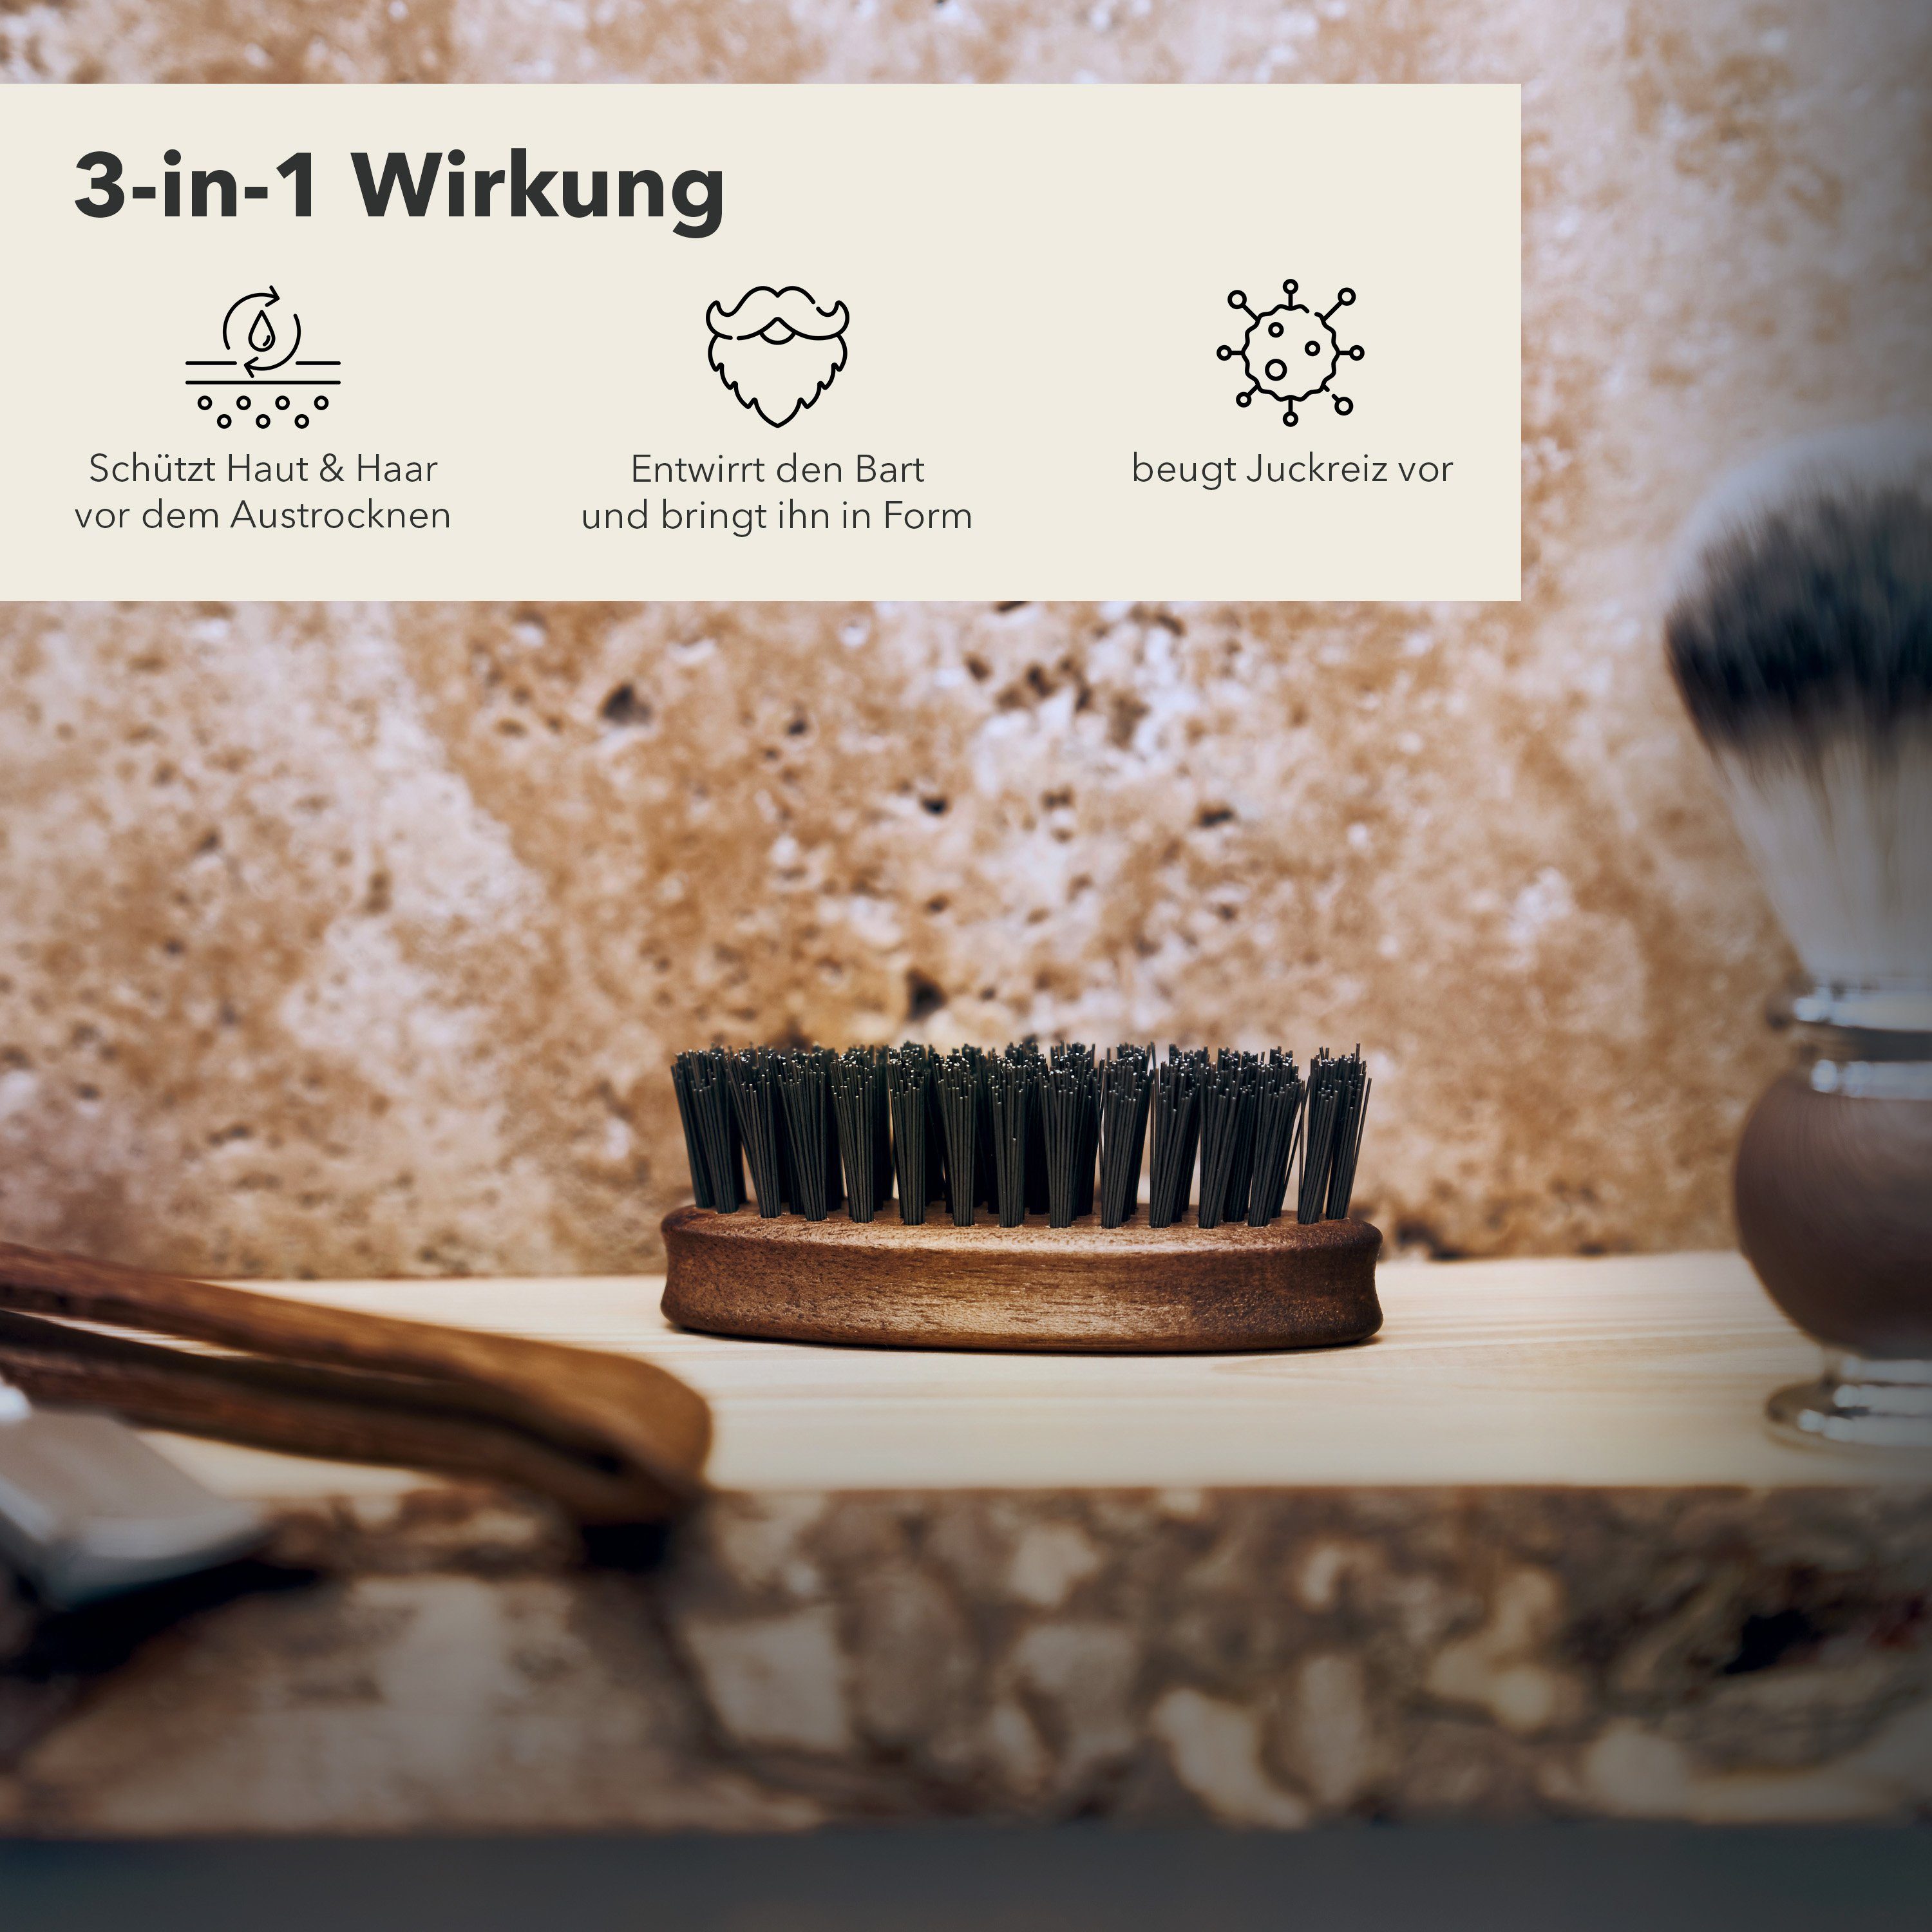 Bartbürste Germany Entwirrt ihn Störtebekker bringt Bart und - Form den in Made in